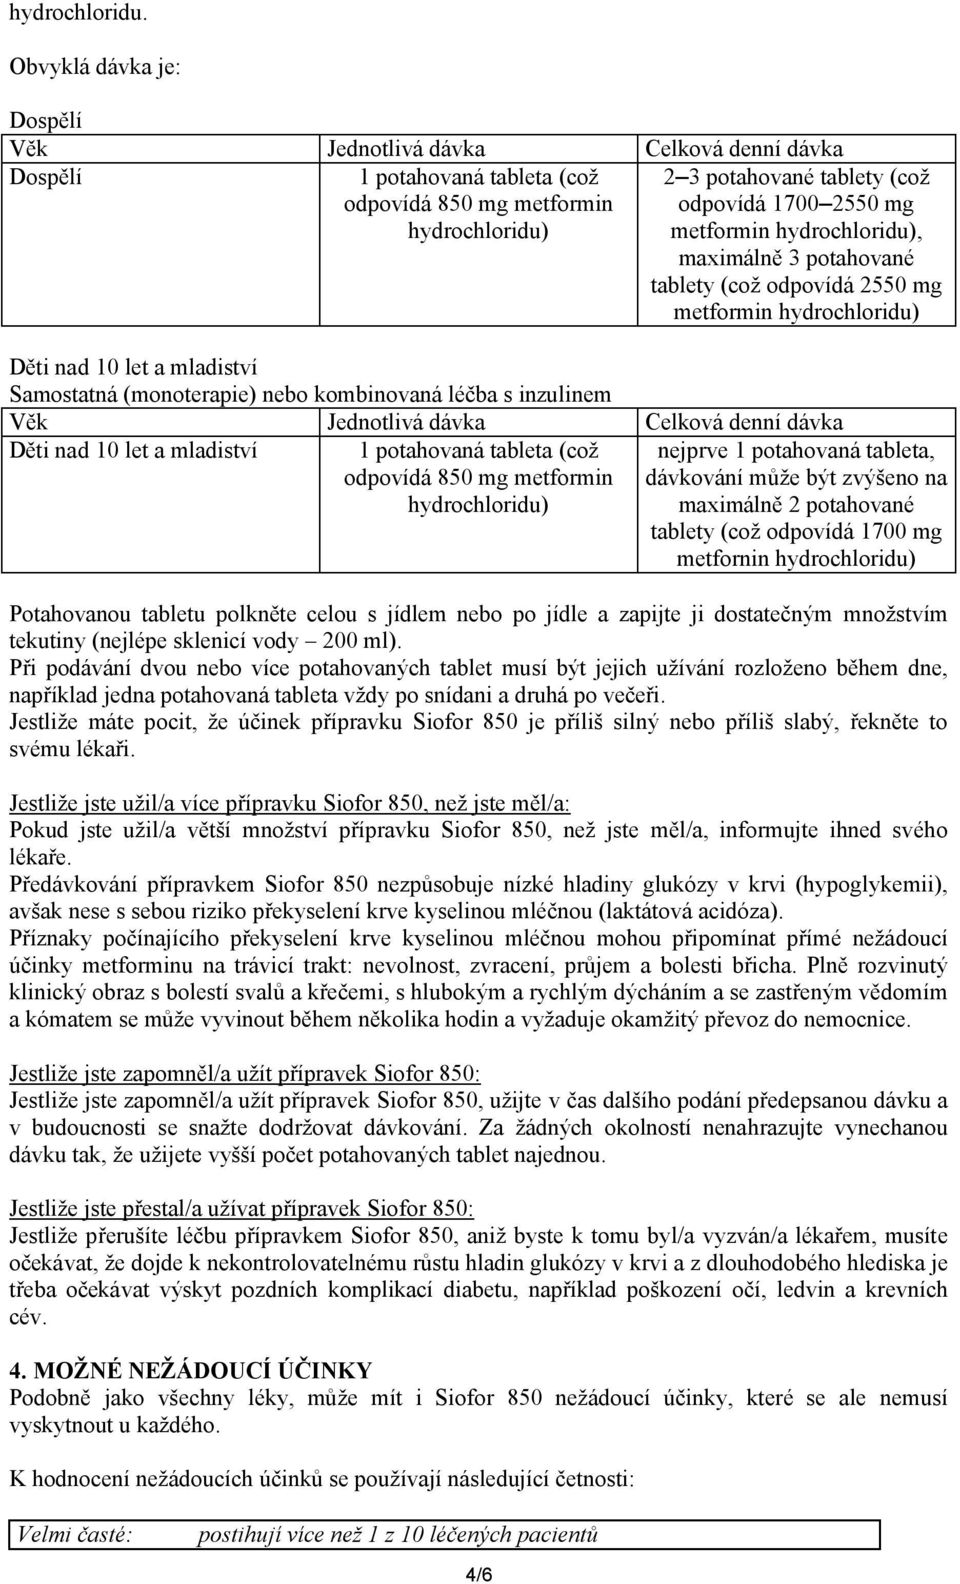 metformin hydrochloridu), maximálně 3 potahované tablety (což odpovídá 2550 mg metformin hydrochloridu) Děti nad 10 let a mladiství Samostatná (monoterapie) nebo kombinovaná léčba s inzulinem Věk